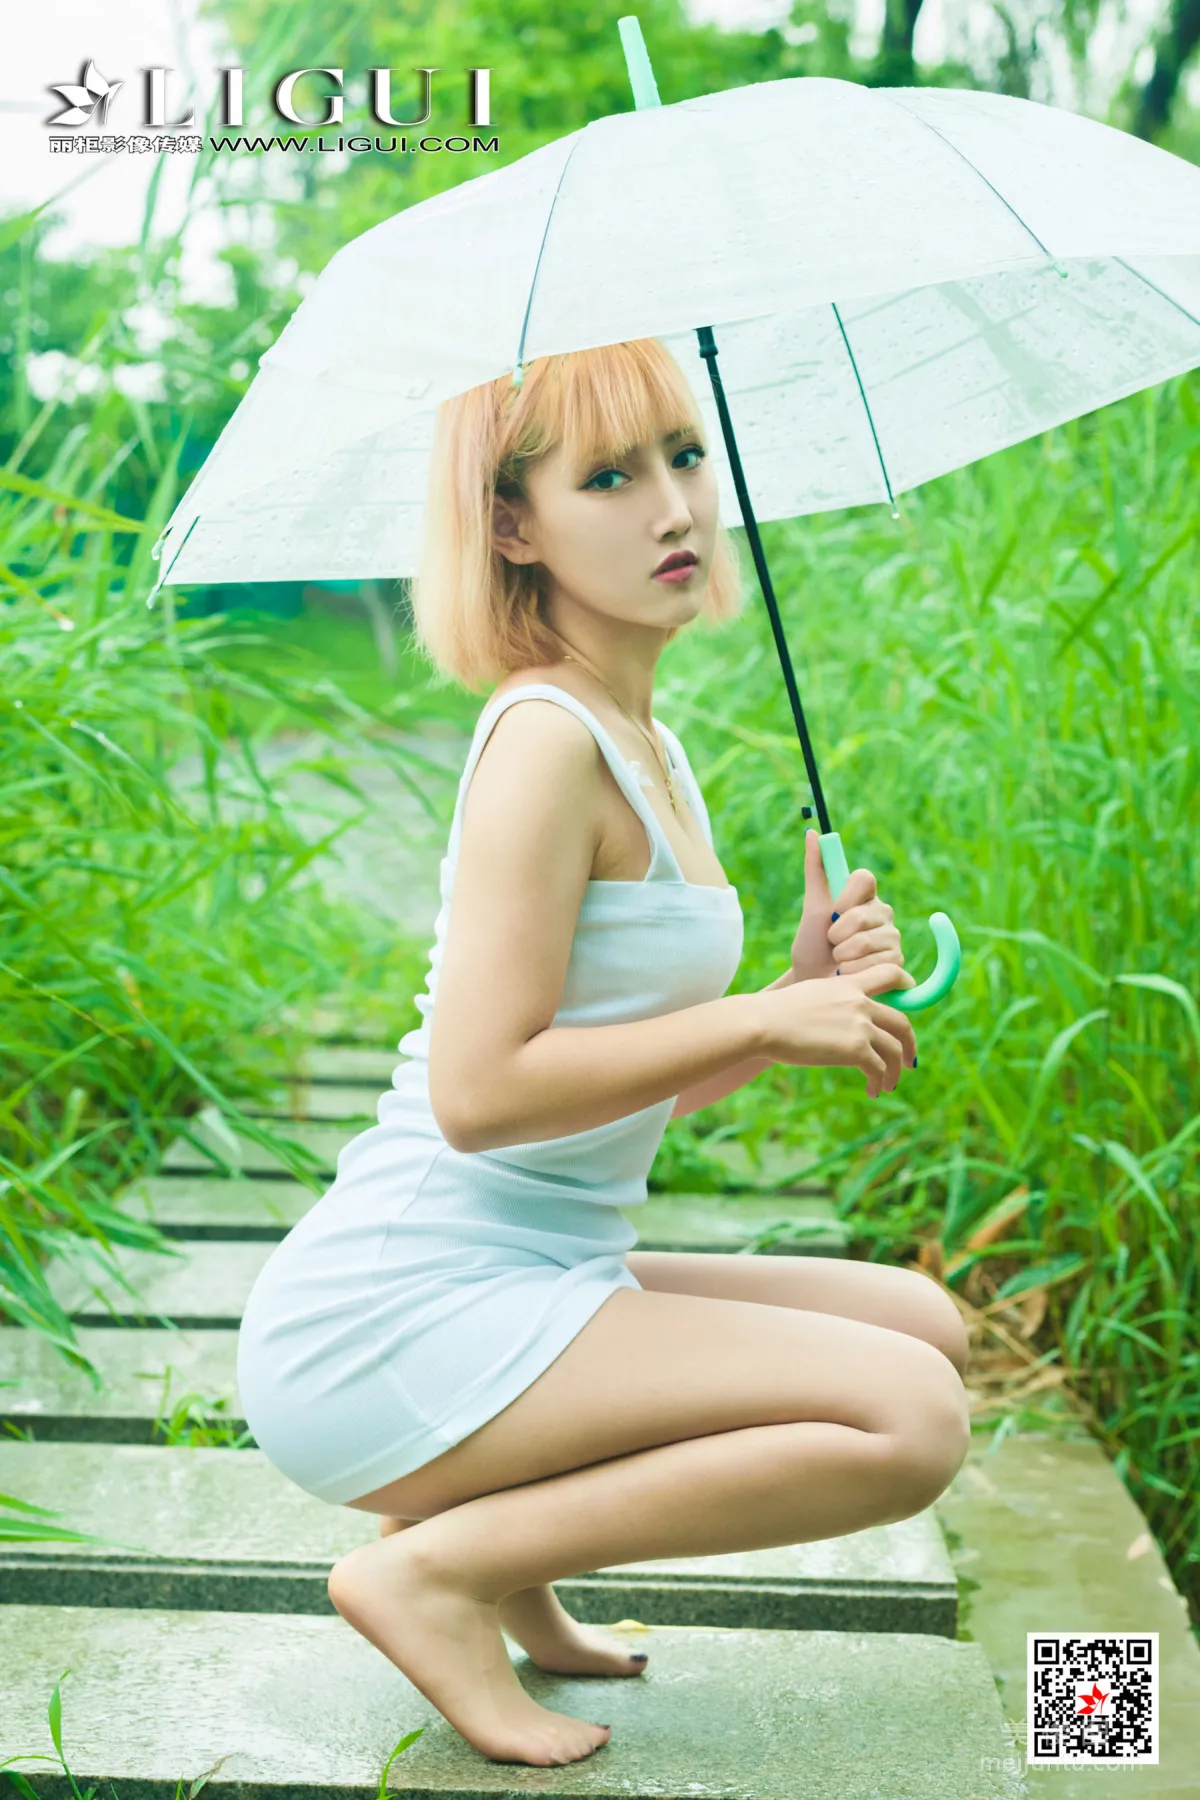 [丽柜Ligui] 网络丽人 Model 小爽 《雨中漫步》38